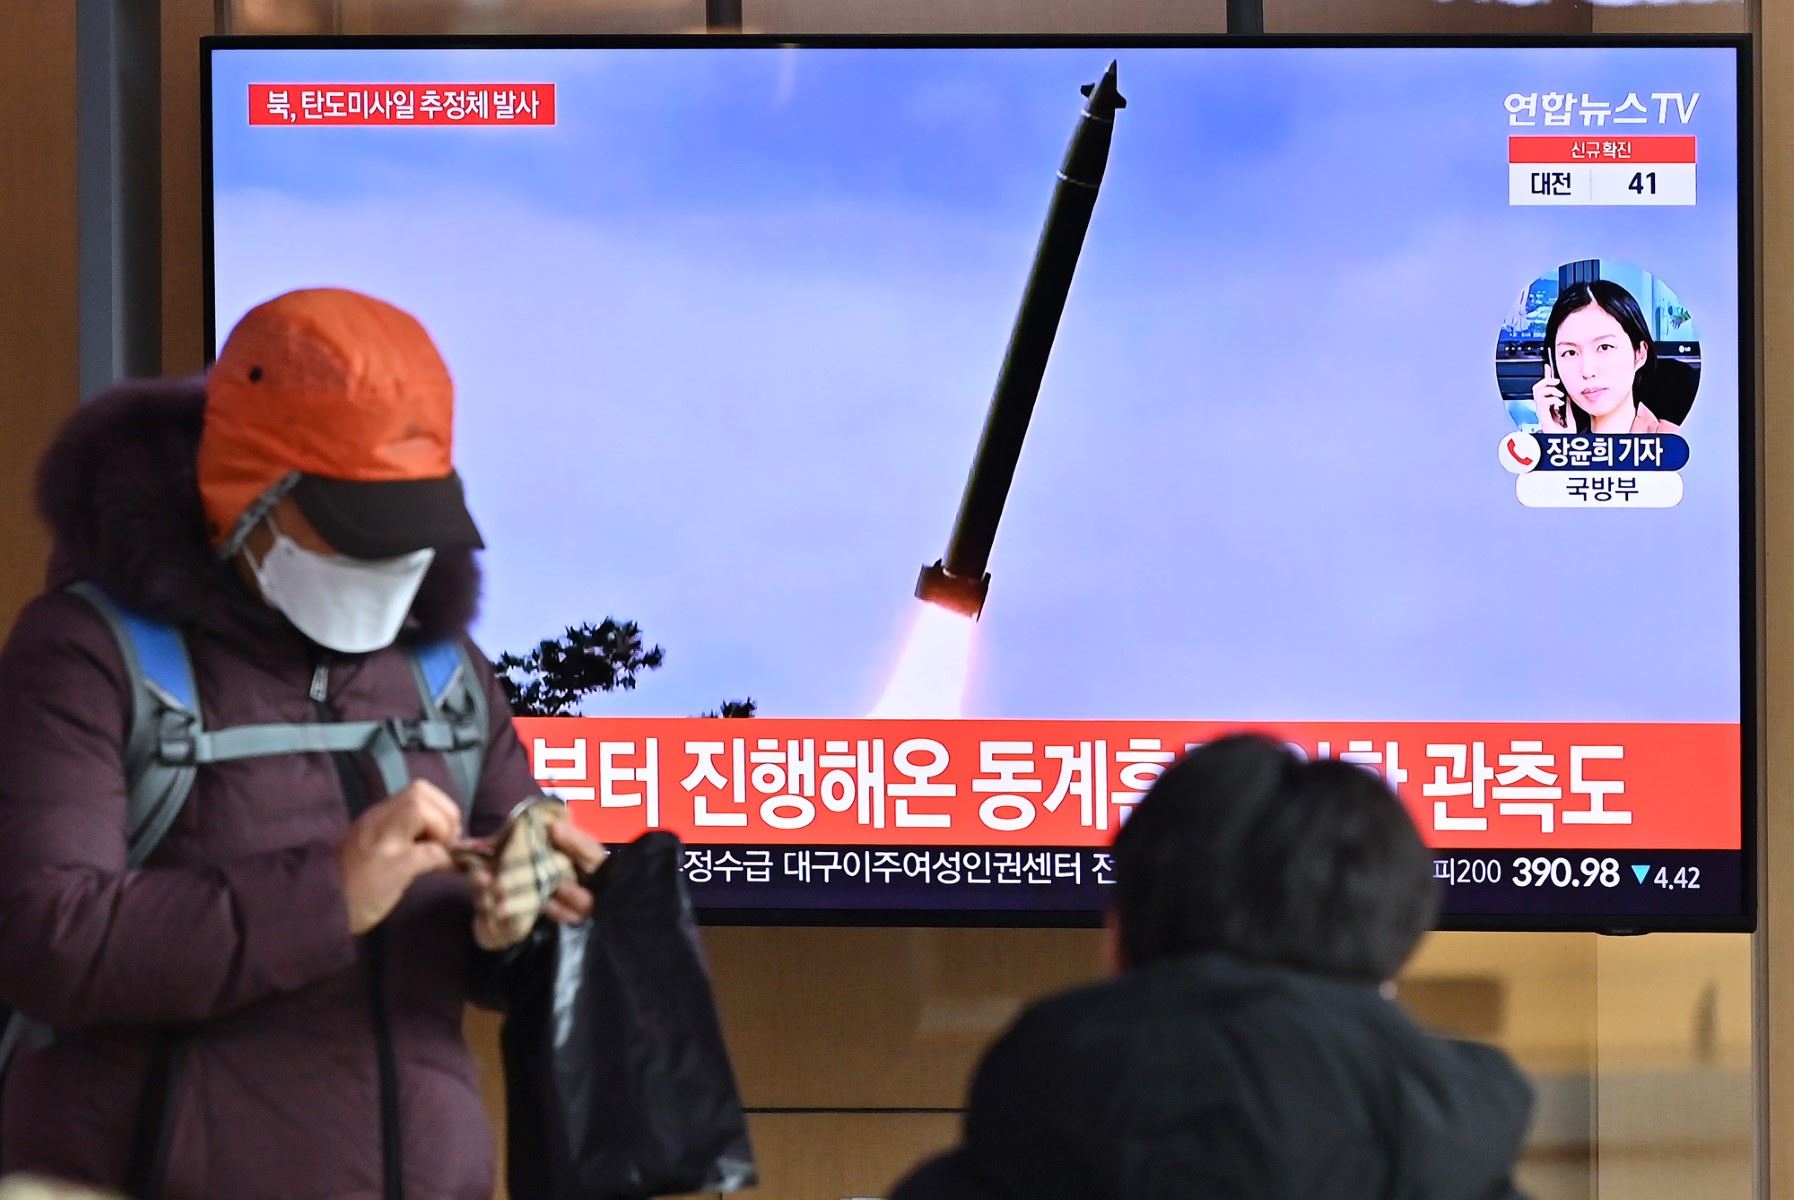 كوريا الشمالية تطلق رسالة صاروخية ... هل وصلت؟ 